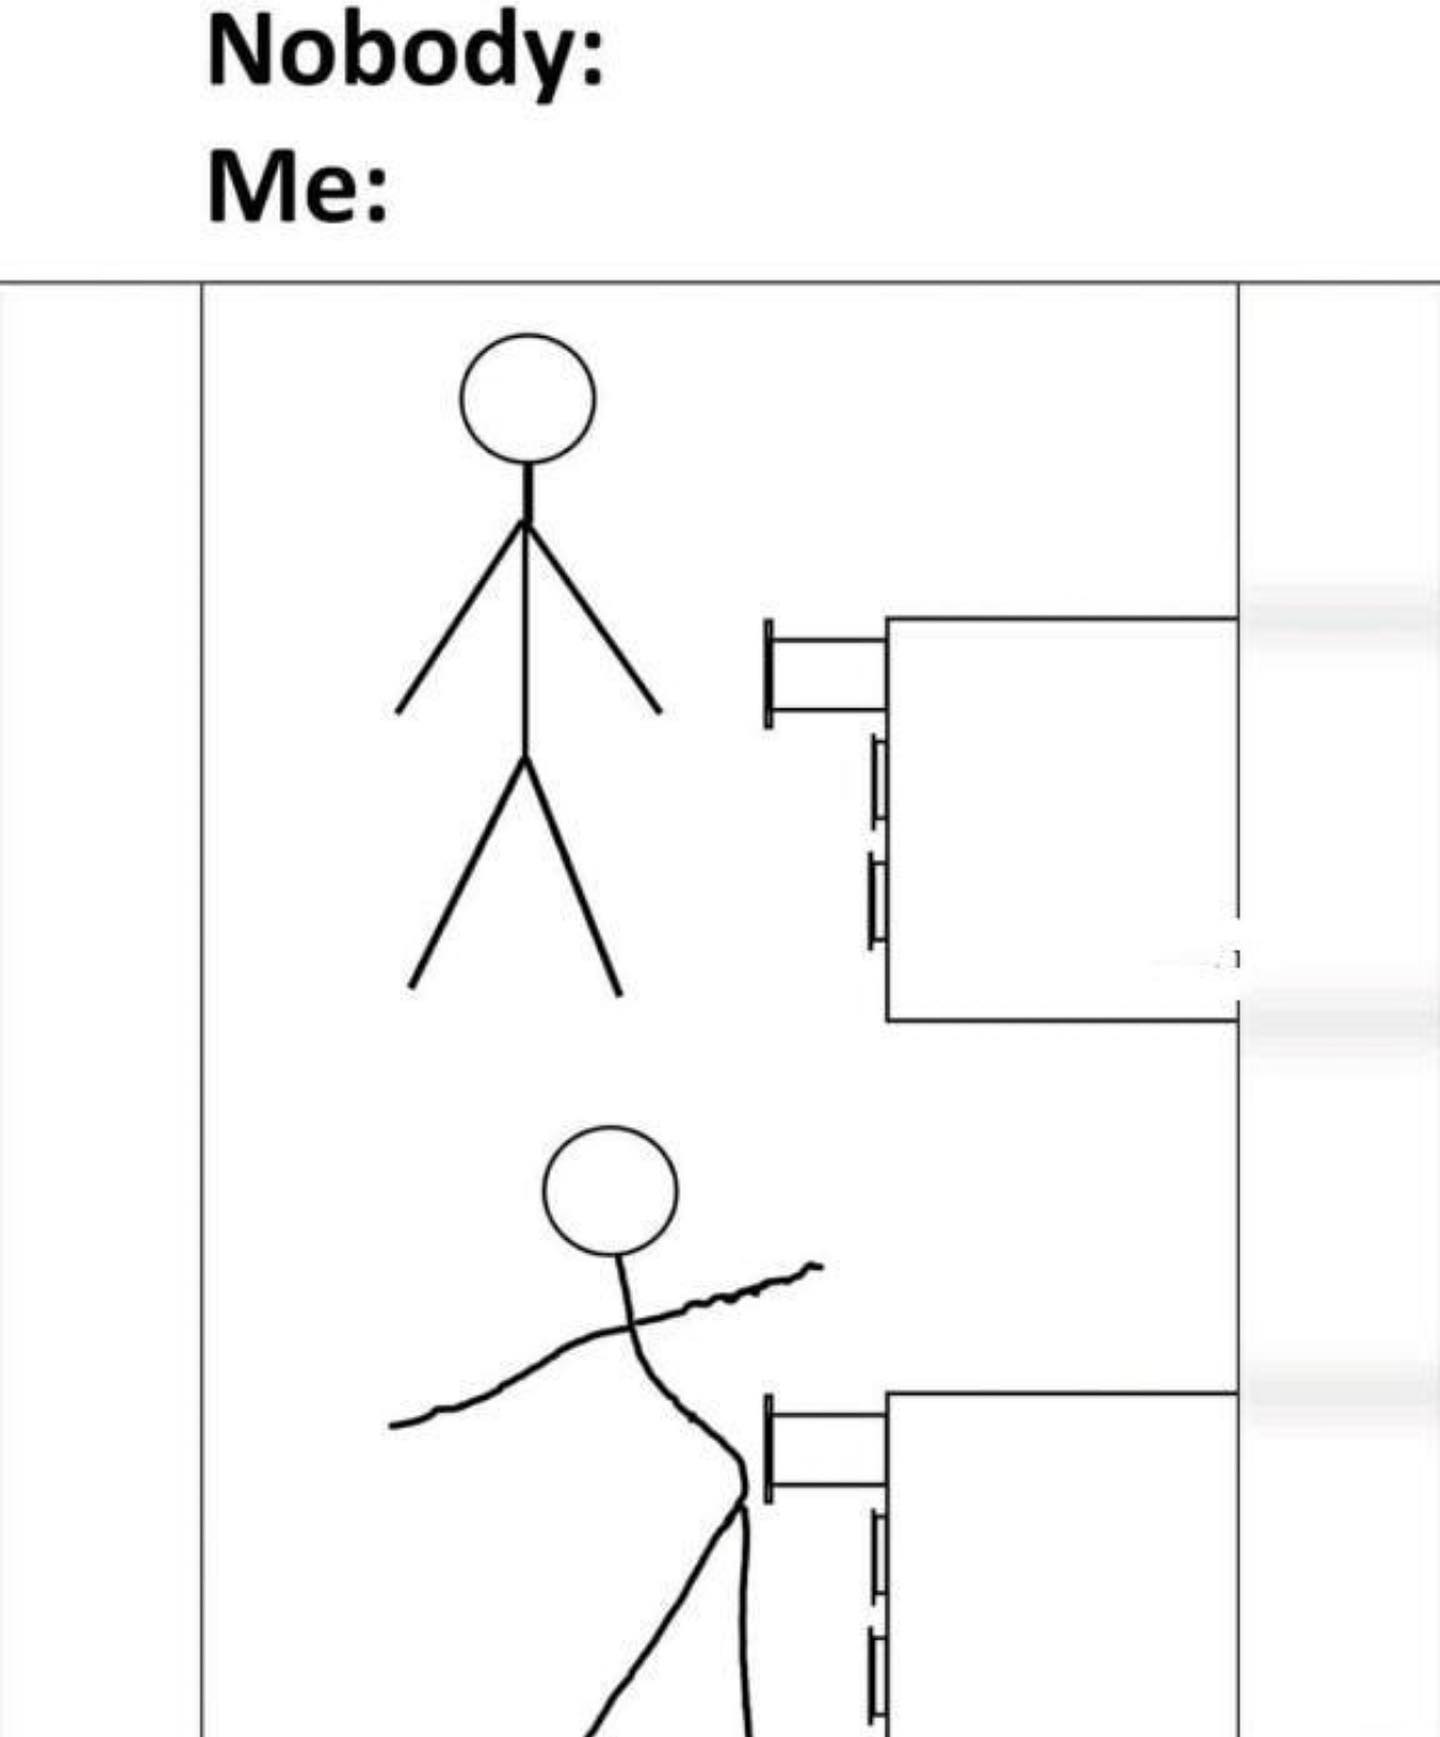 dank memes - diagram - Nobody Me